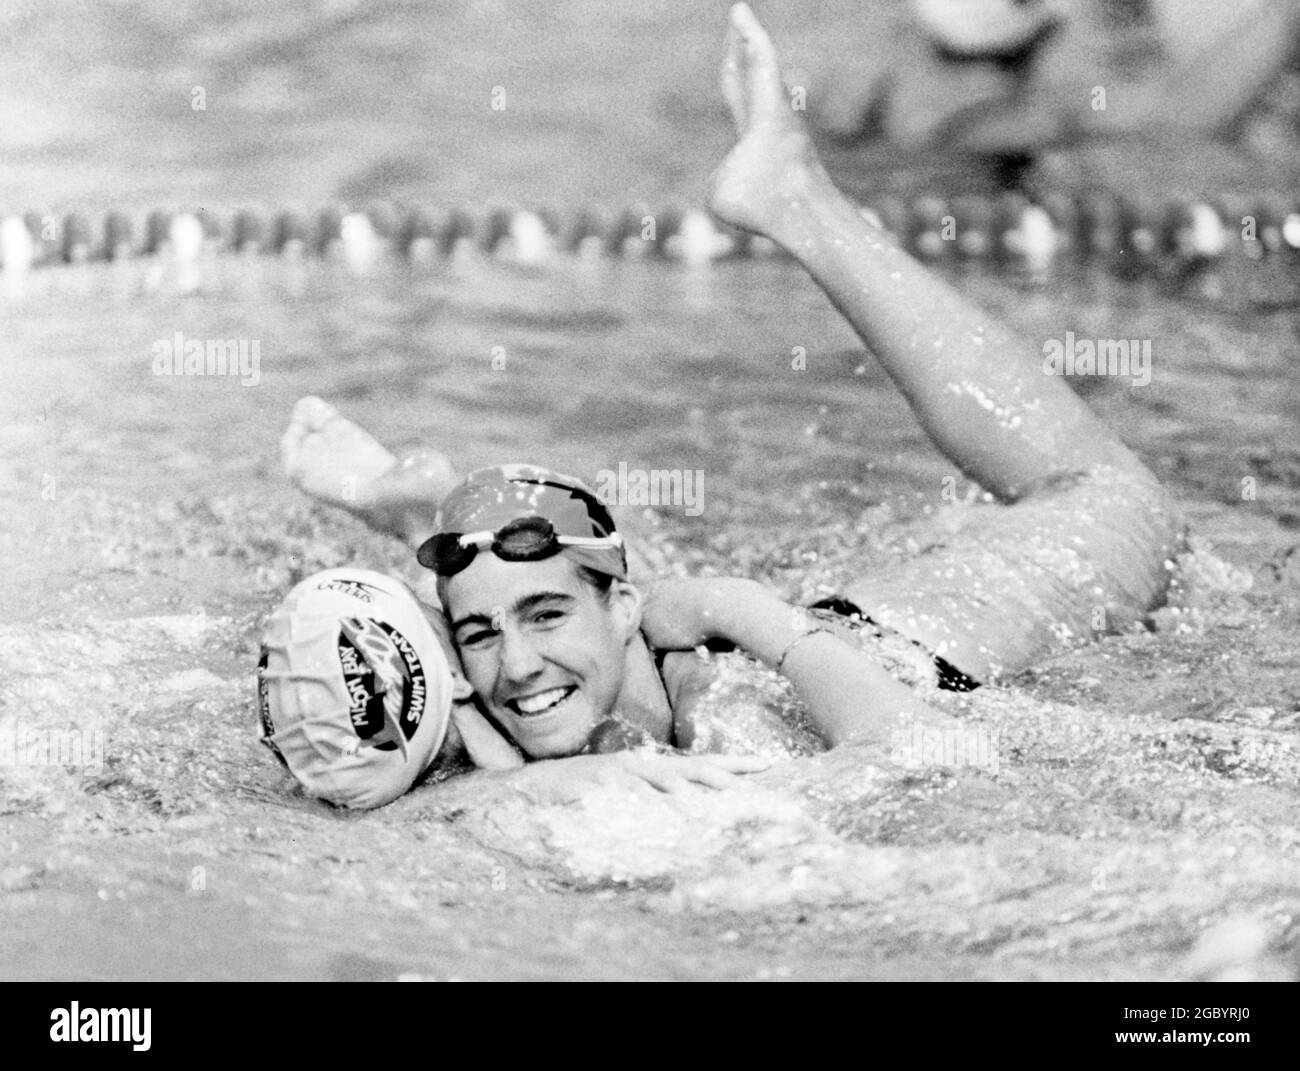 Austin Texas USA, 1988: Tracey McFarlane, nageuse de femmes de l'Université du Texas, célèbre après avoir remporté le coup de sein de 200 aux essais olympiques. ©Bob Daemmrich Banque D'Images